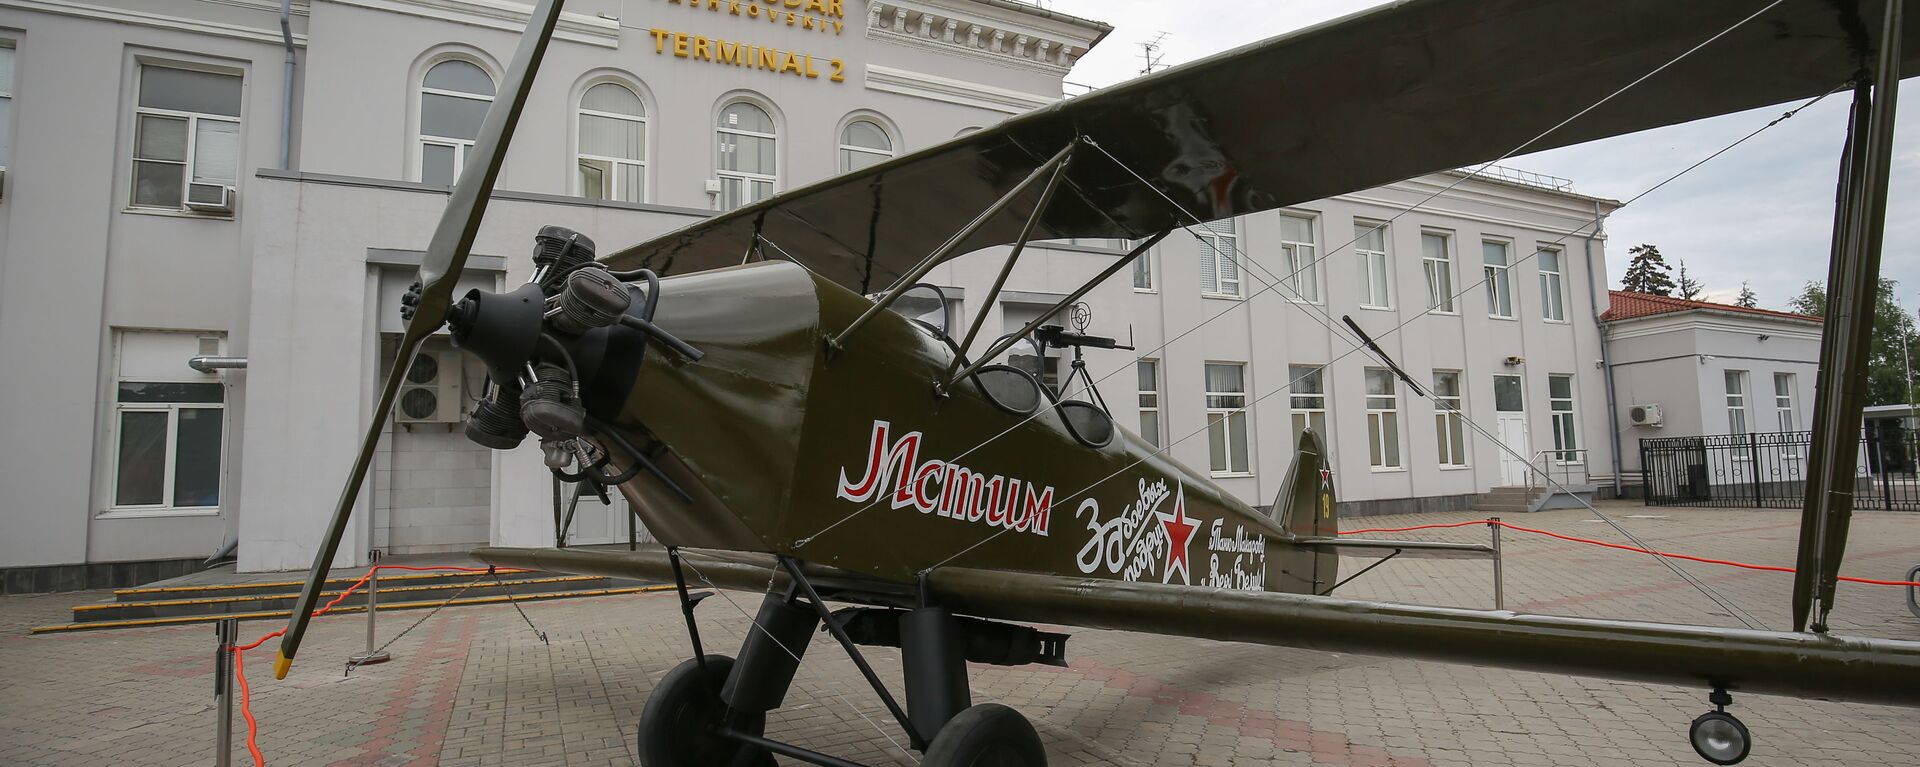 Макет самолета У-2 (По-2нлб) у здания аэропорта Пашковский в Краснодаре - Sputnik Казахстан, 1920, 04.05.2020